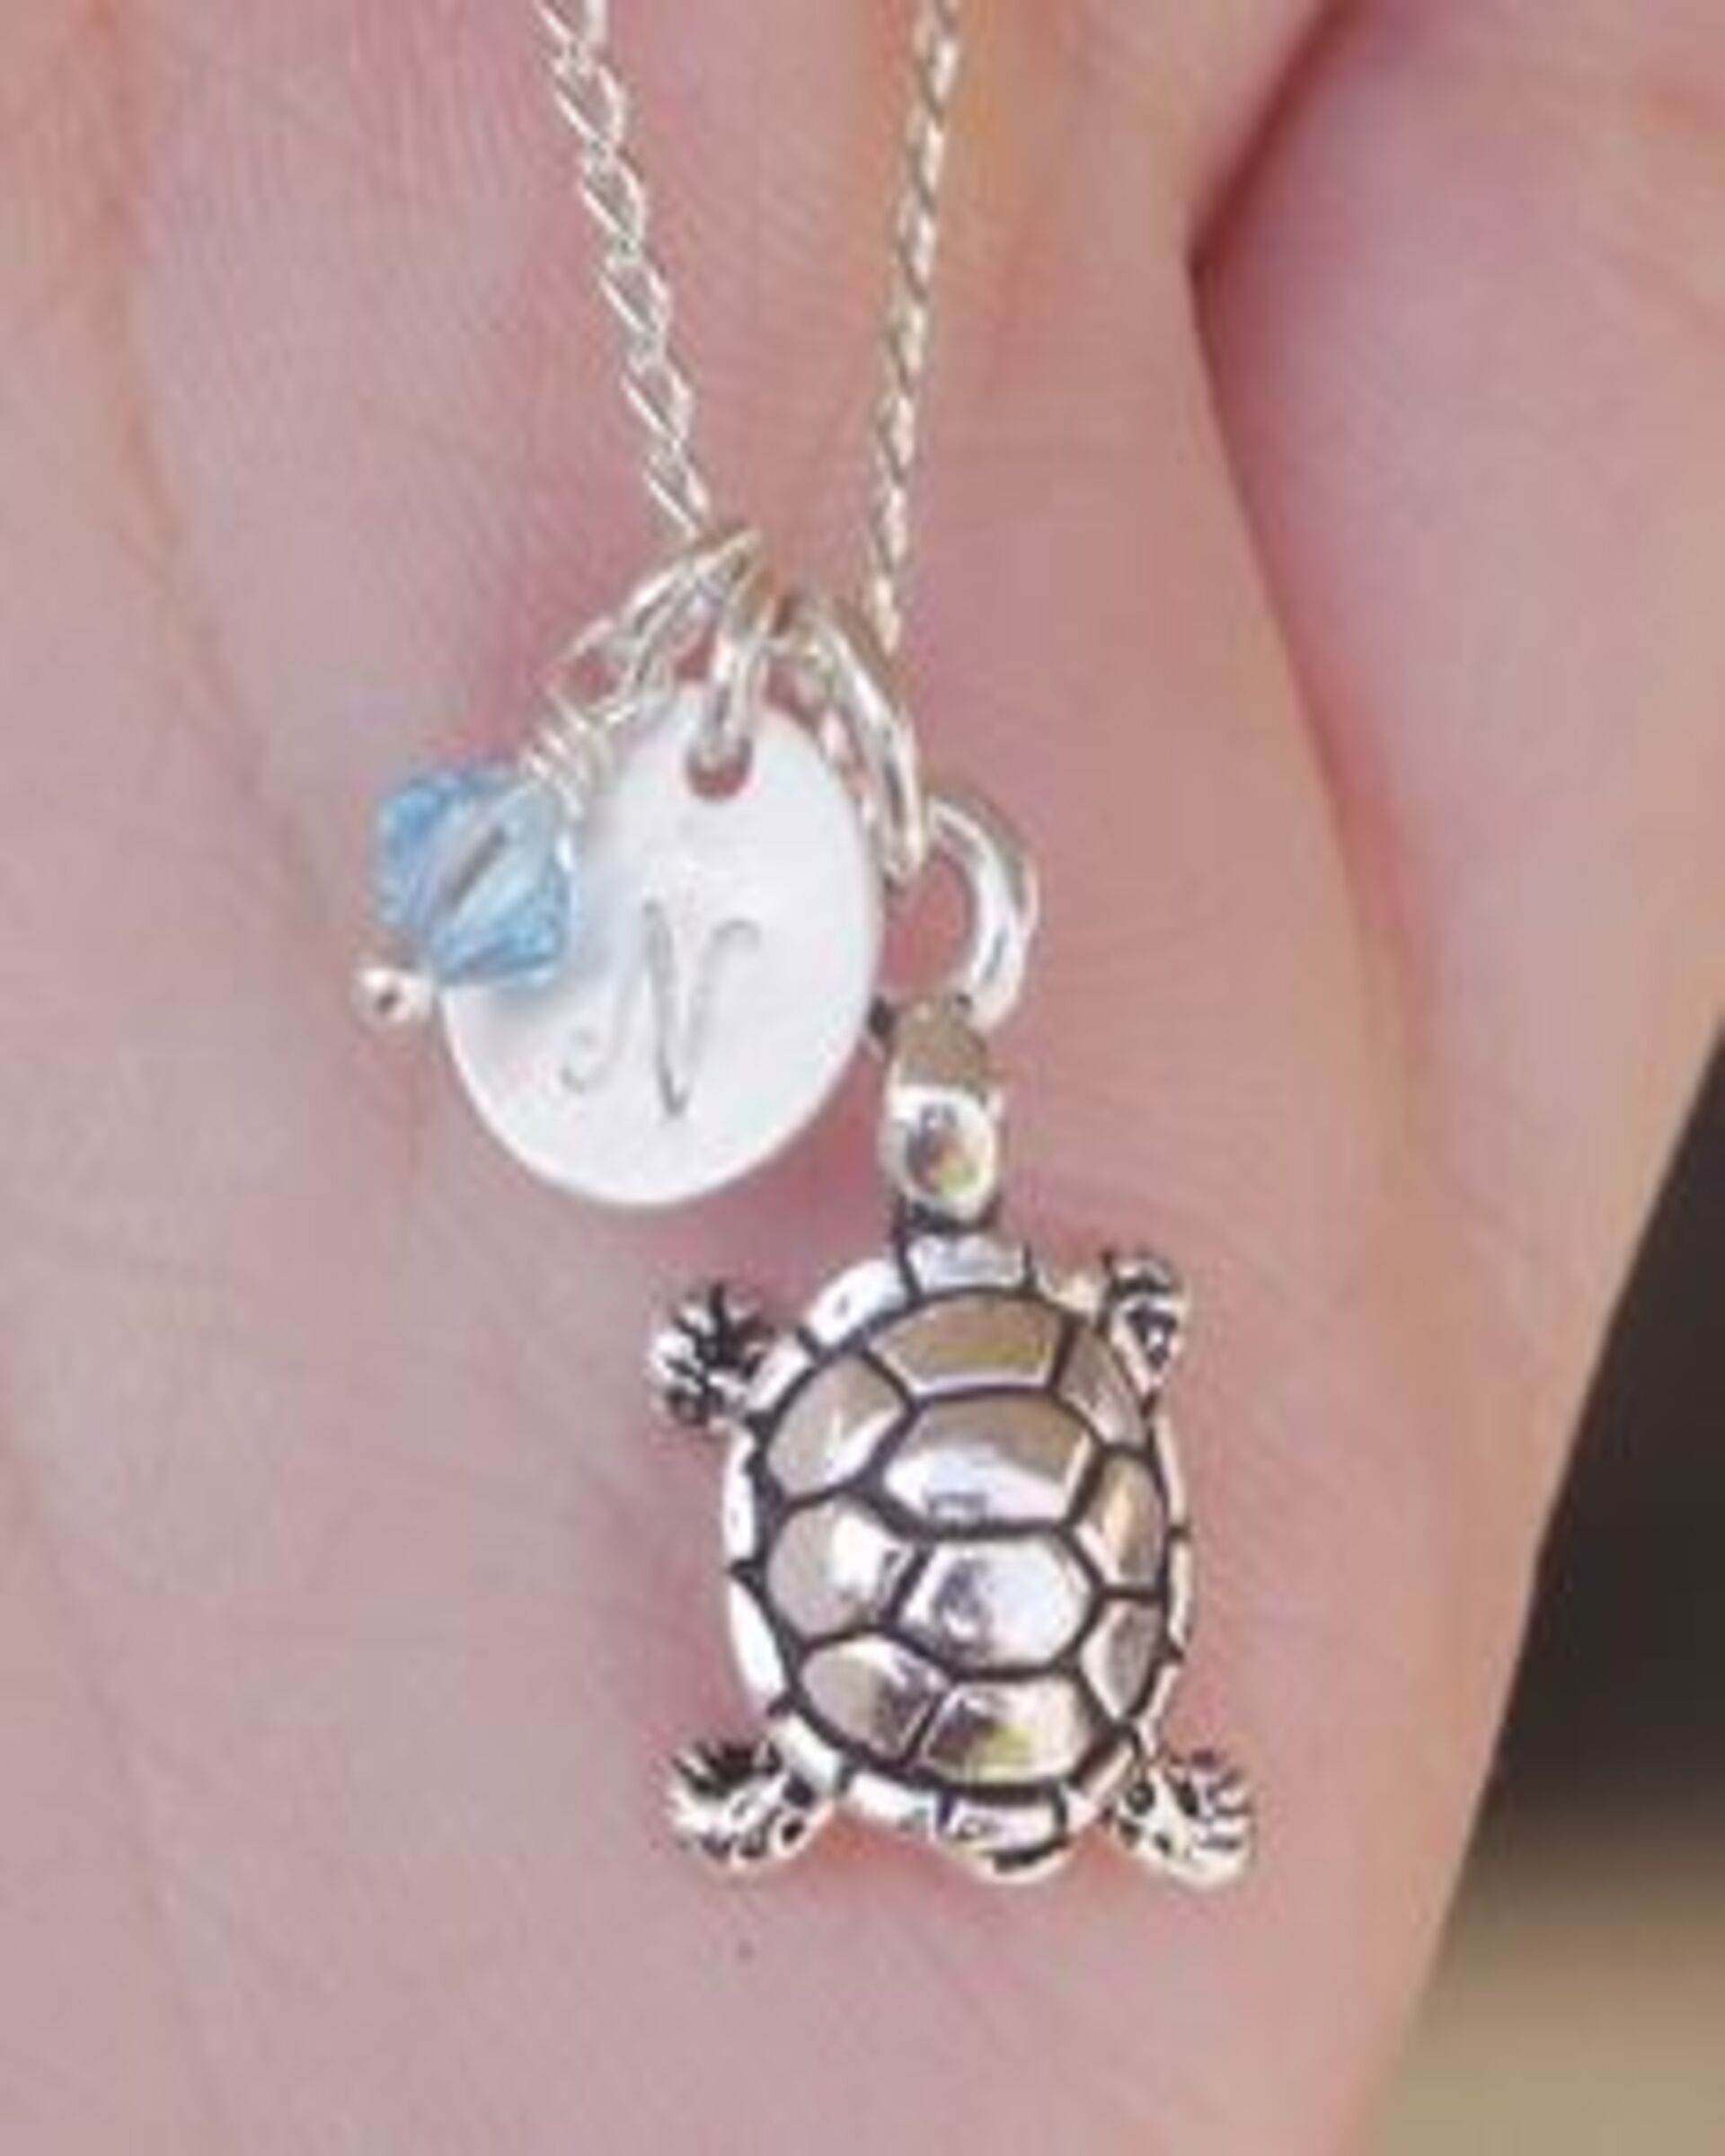 Un collier de tortue avec l'initiale "N" | Source : Flickr